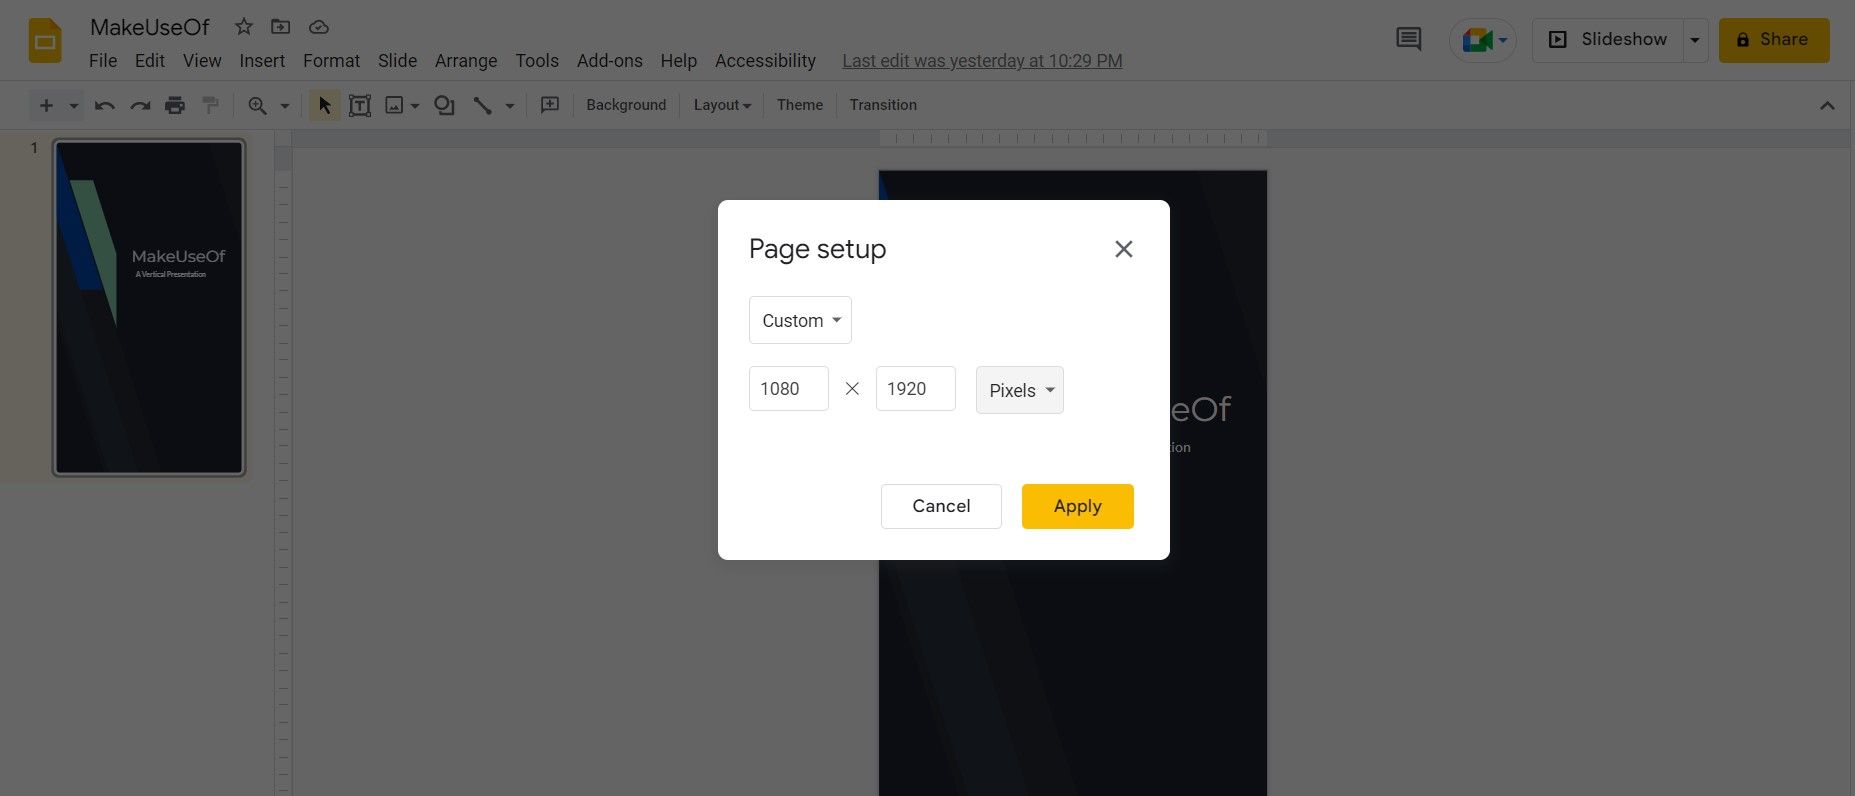 Page setup in Google Slides